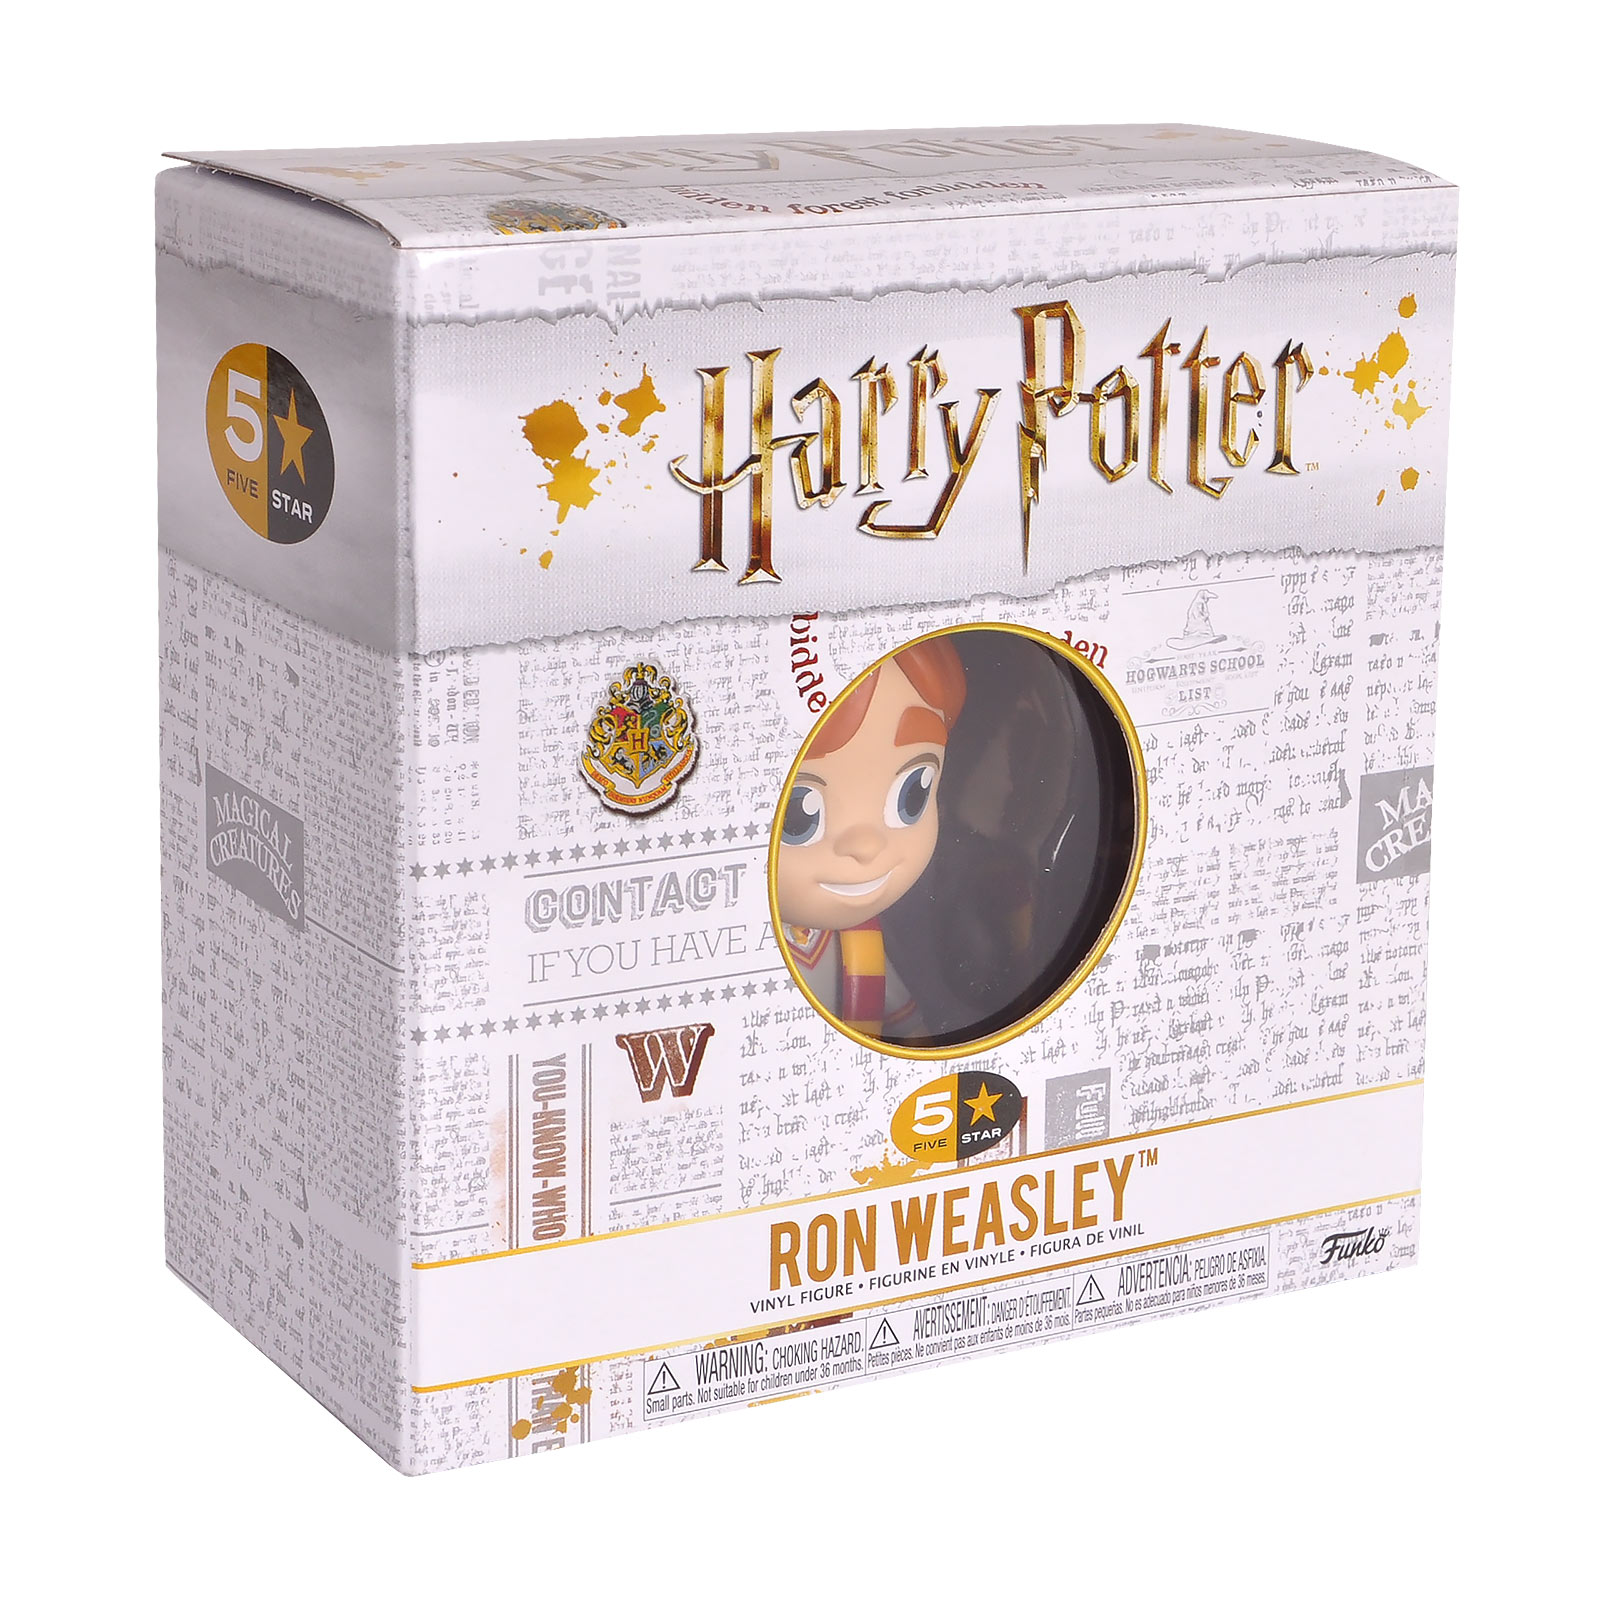 Harry Potter - Ron Weasley Gryffindor Funko Five Star Figur